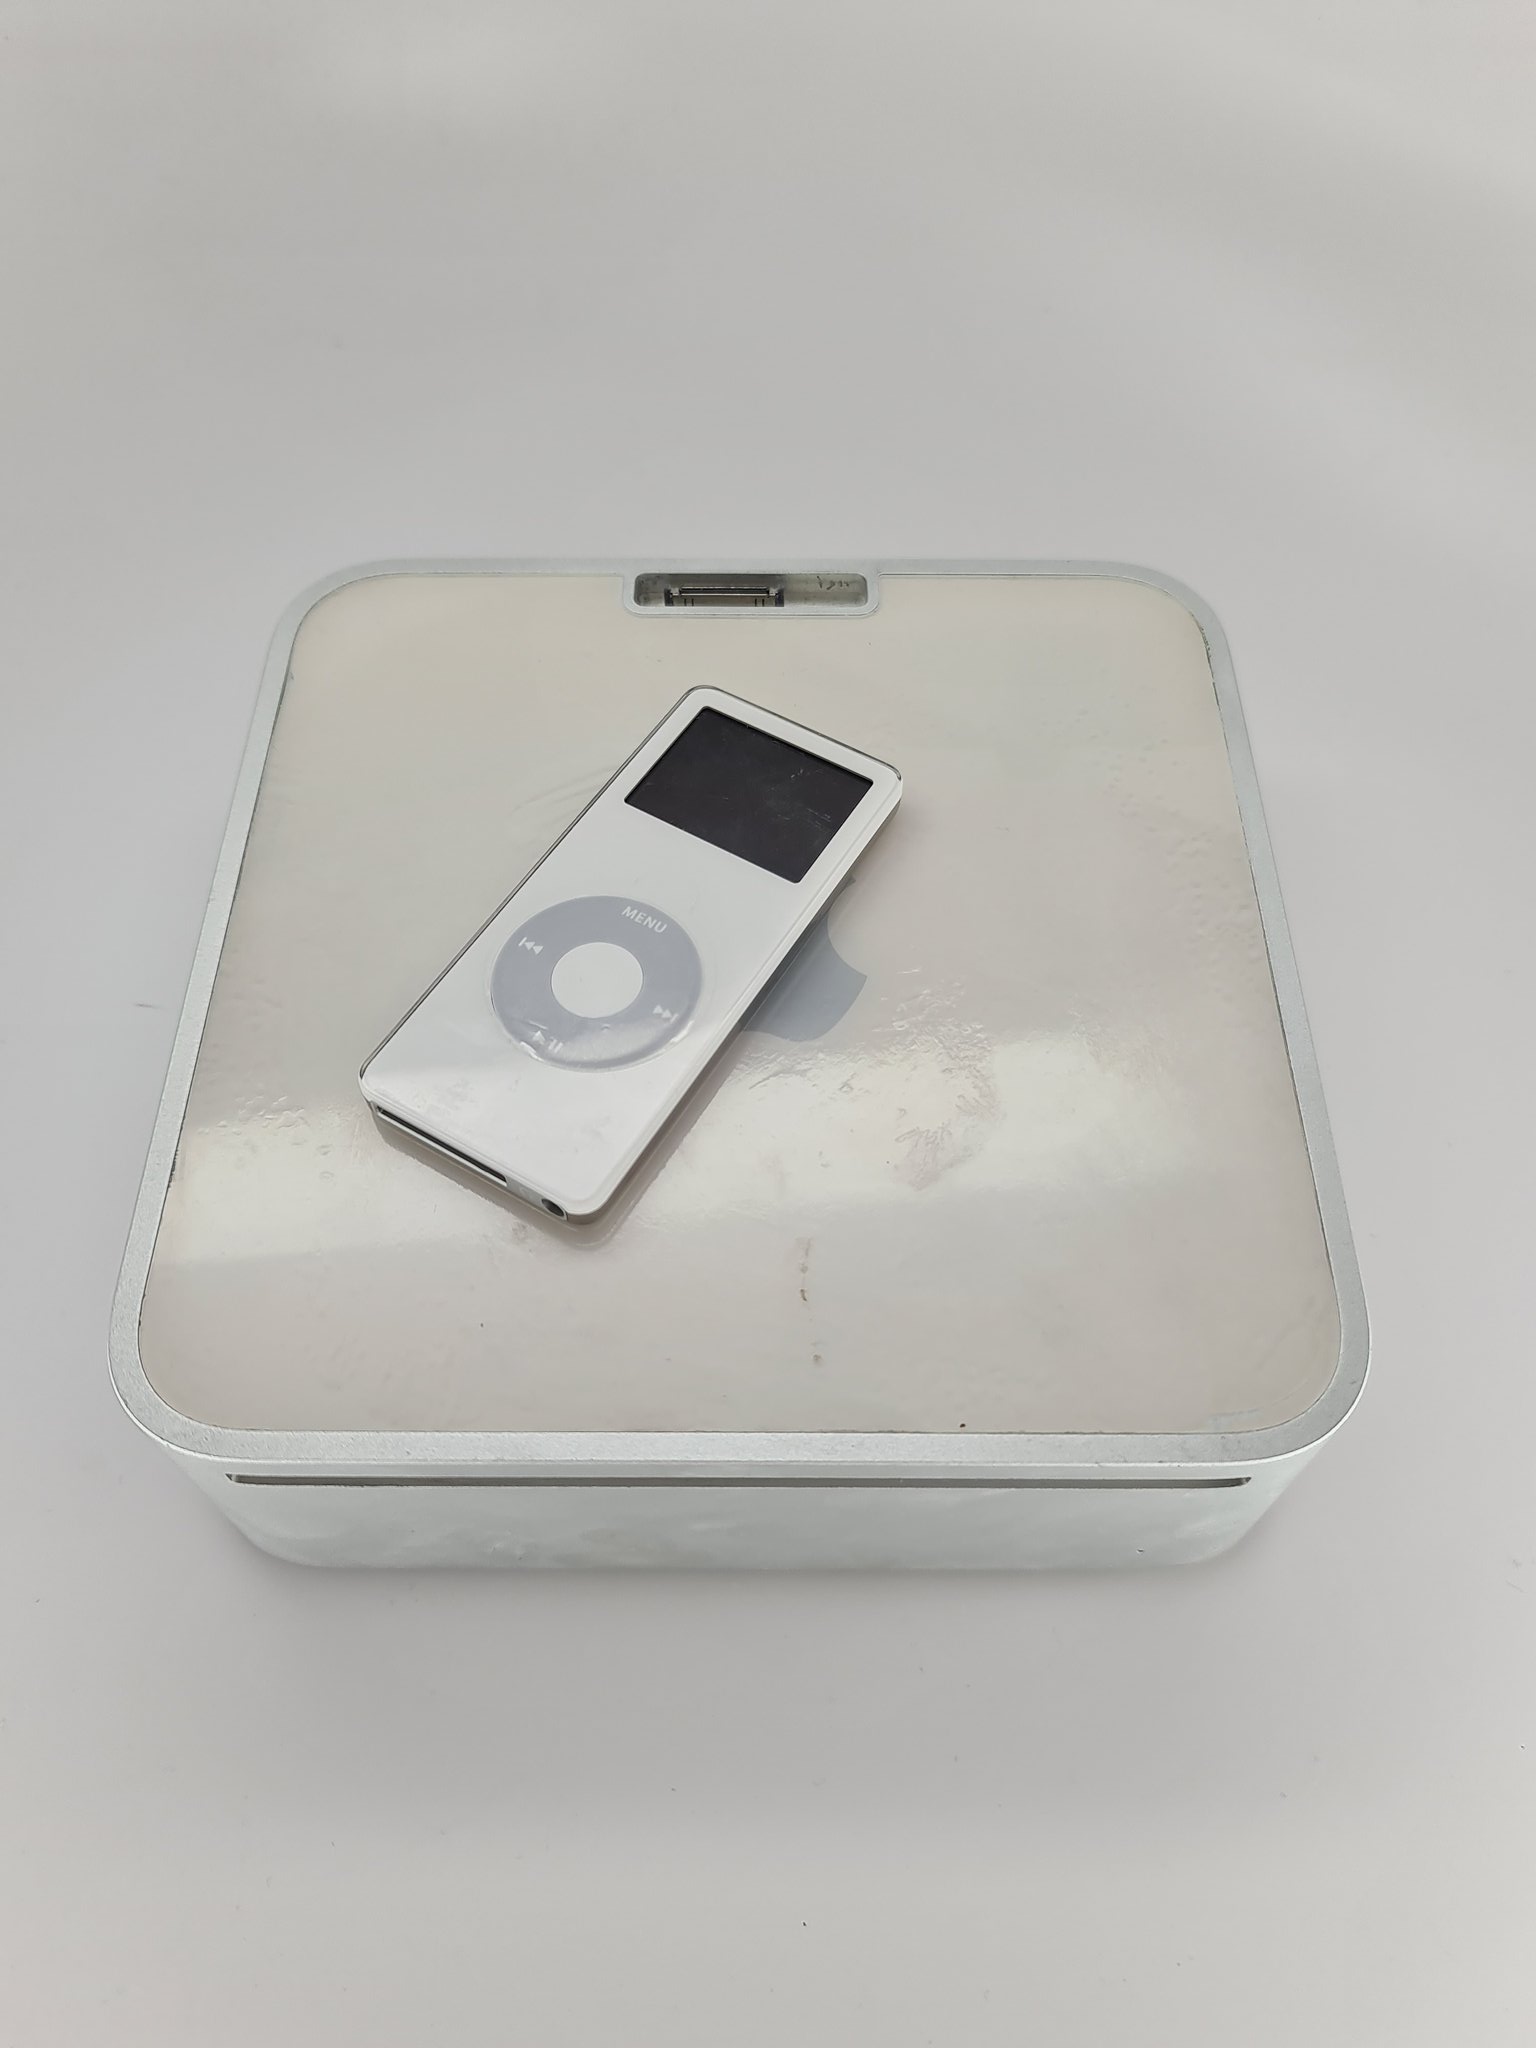 Mac Mini with iPod Dock Prototype